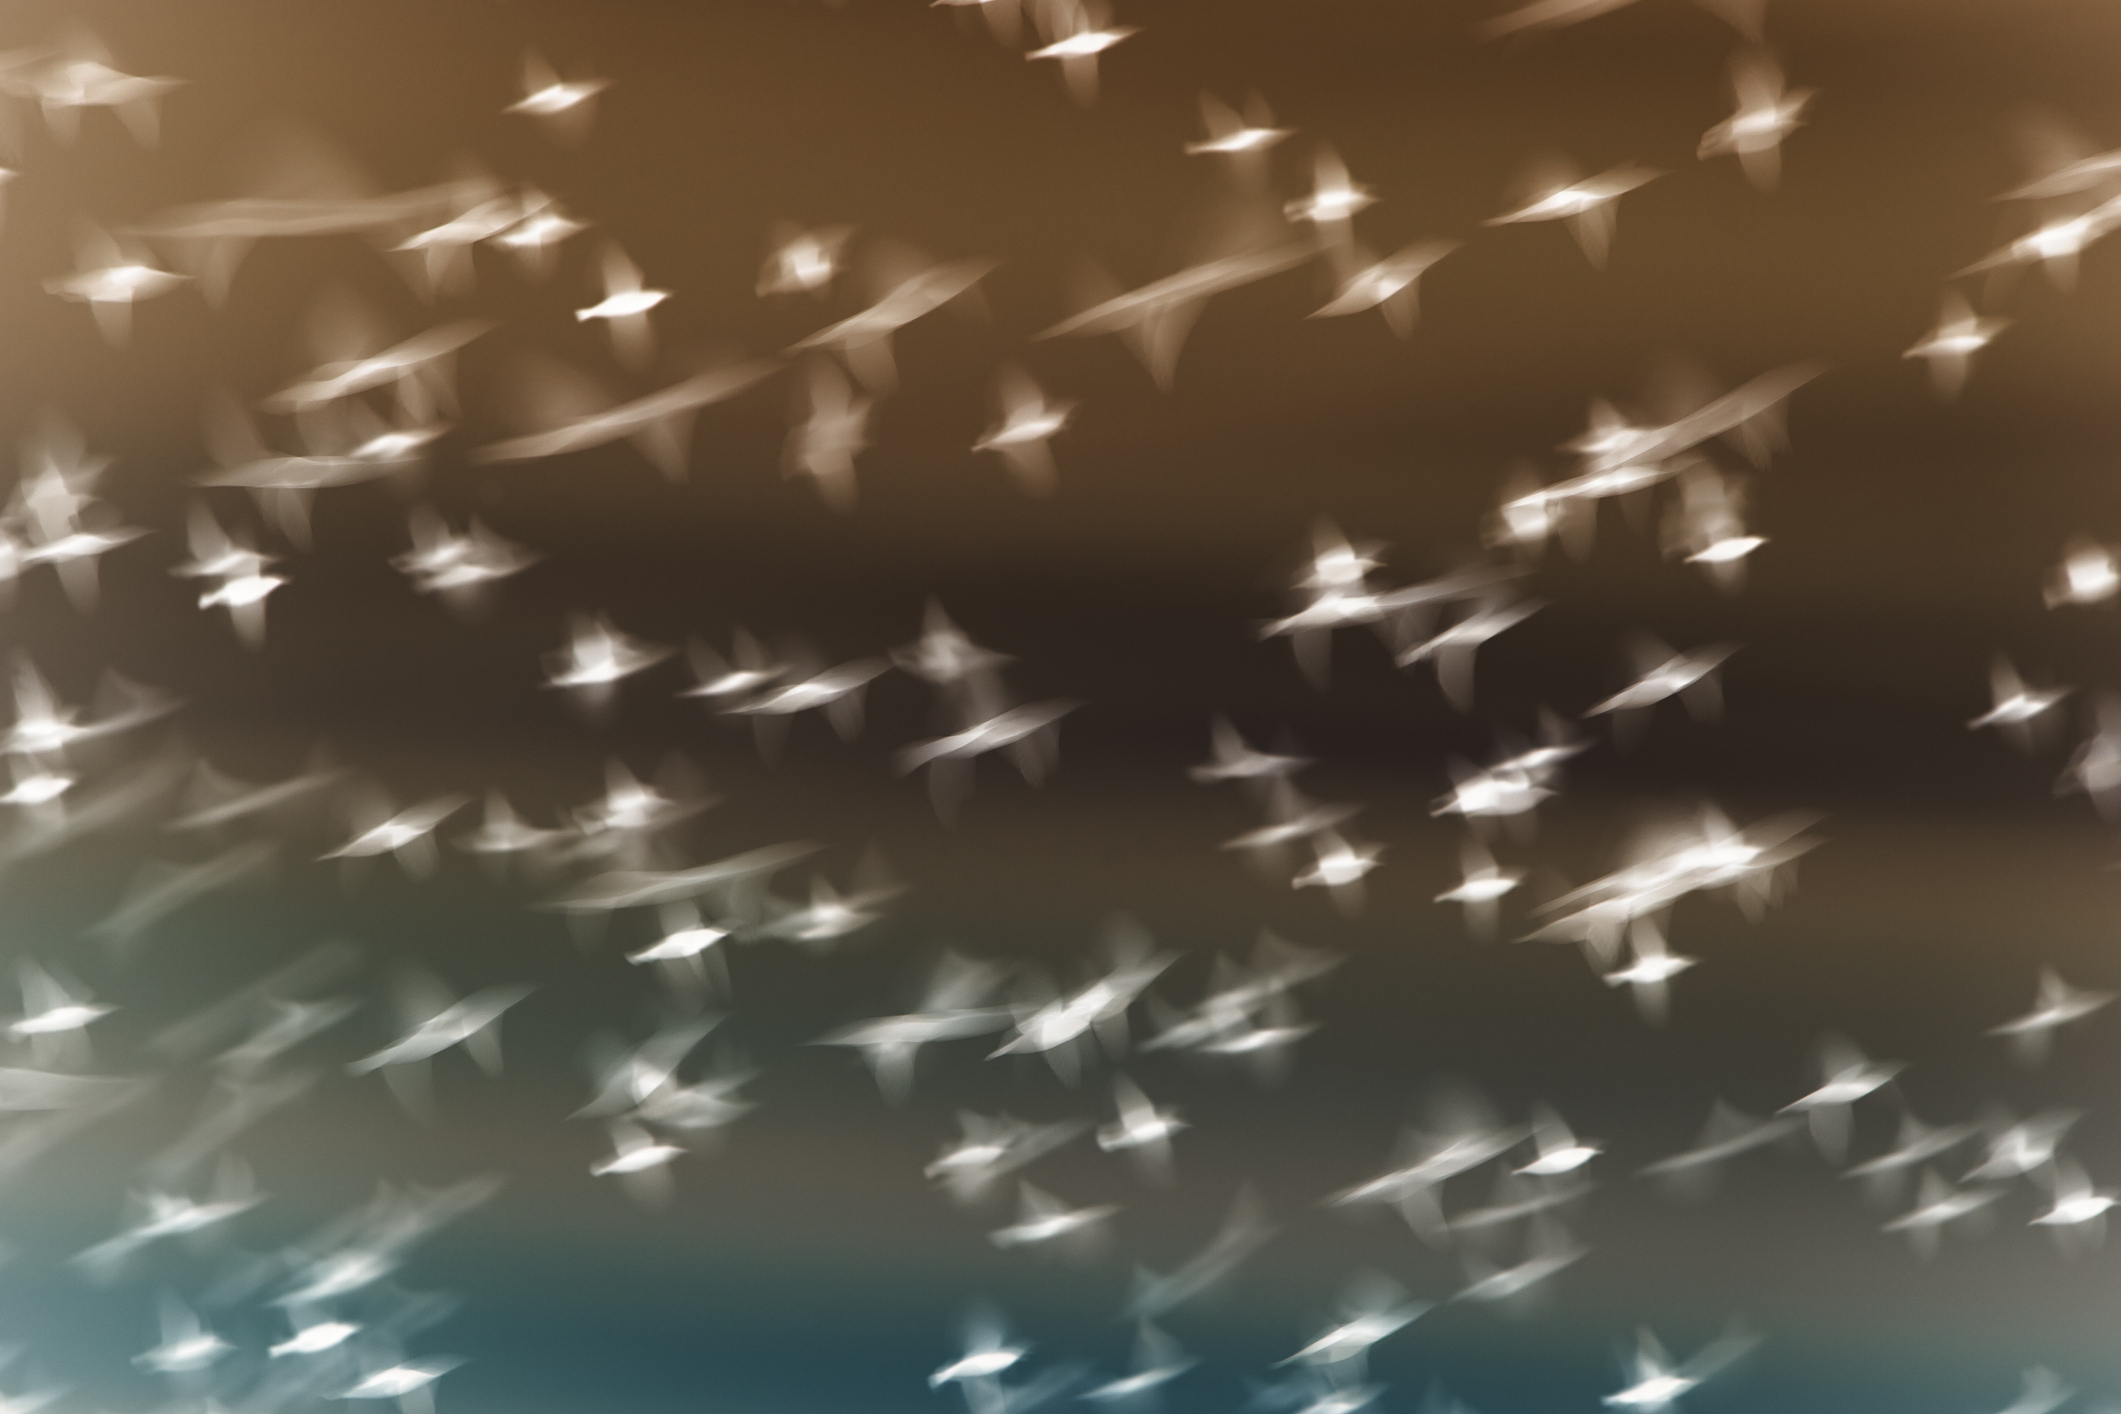 Starlings flying across overcast sky. fine art photography